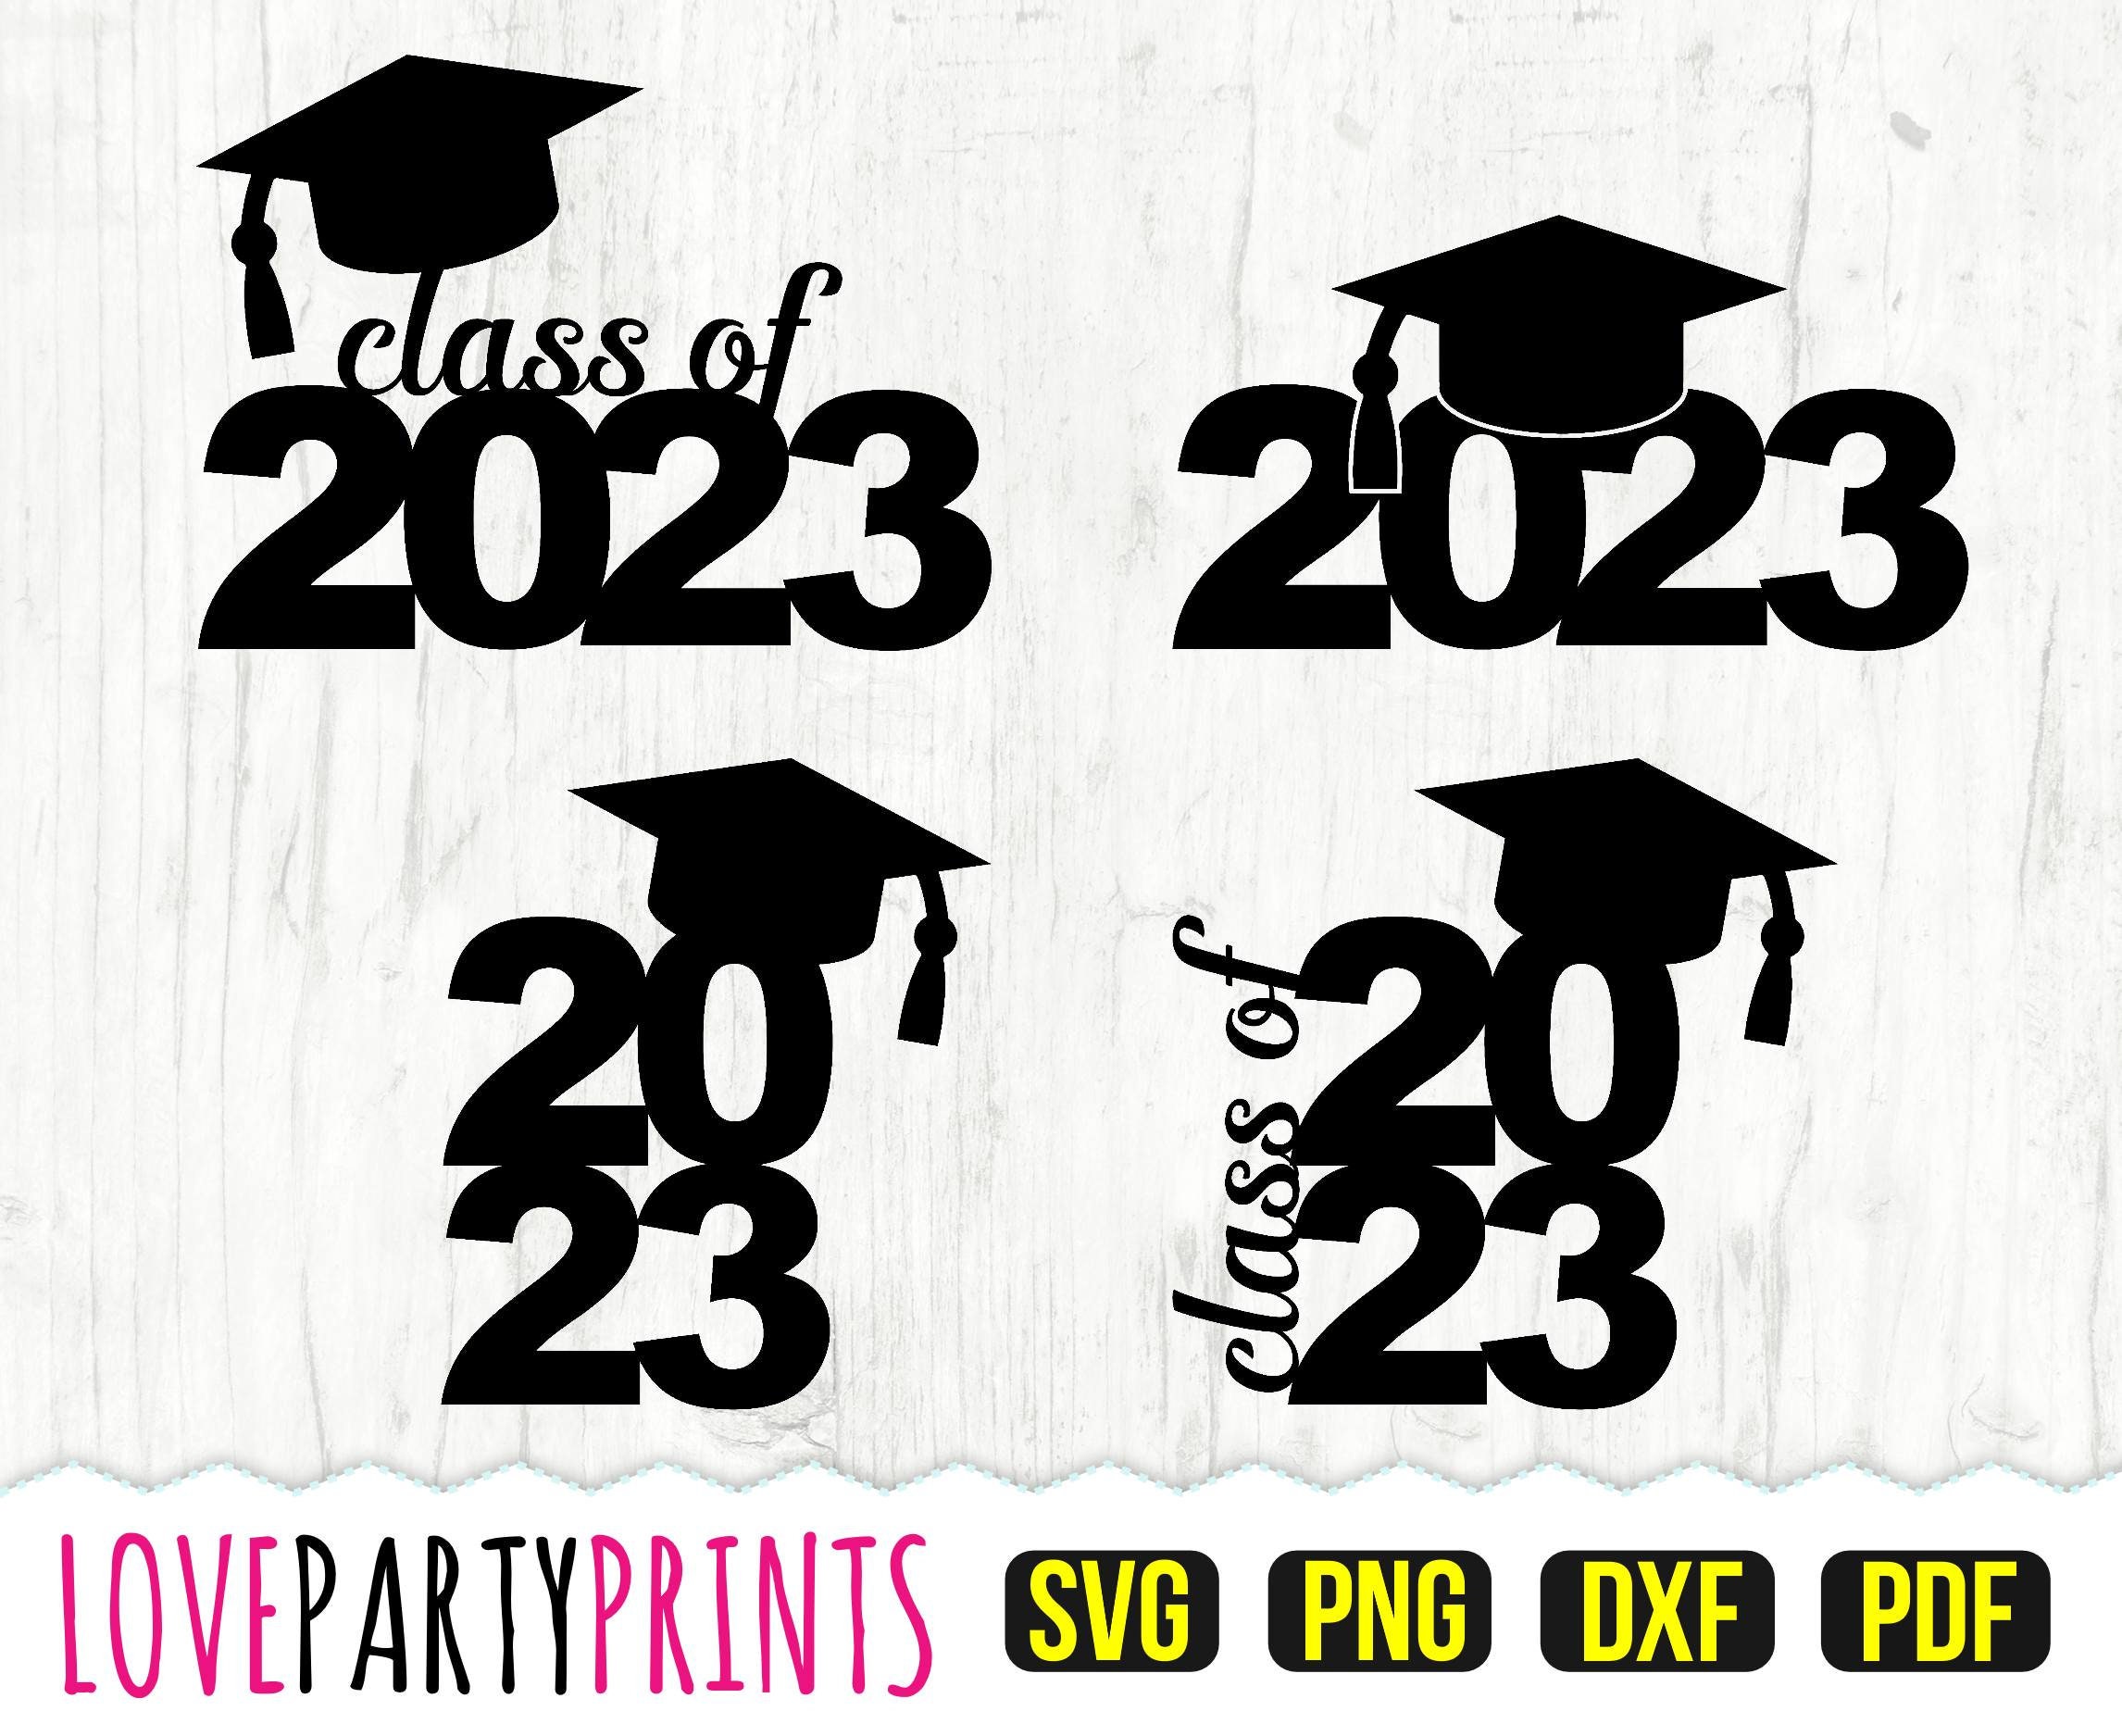 Class of 2023 SVG DXF PNG Pdf Graduation 2023 Svg - Etsy UK